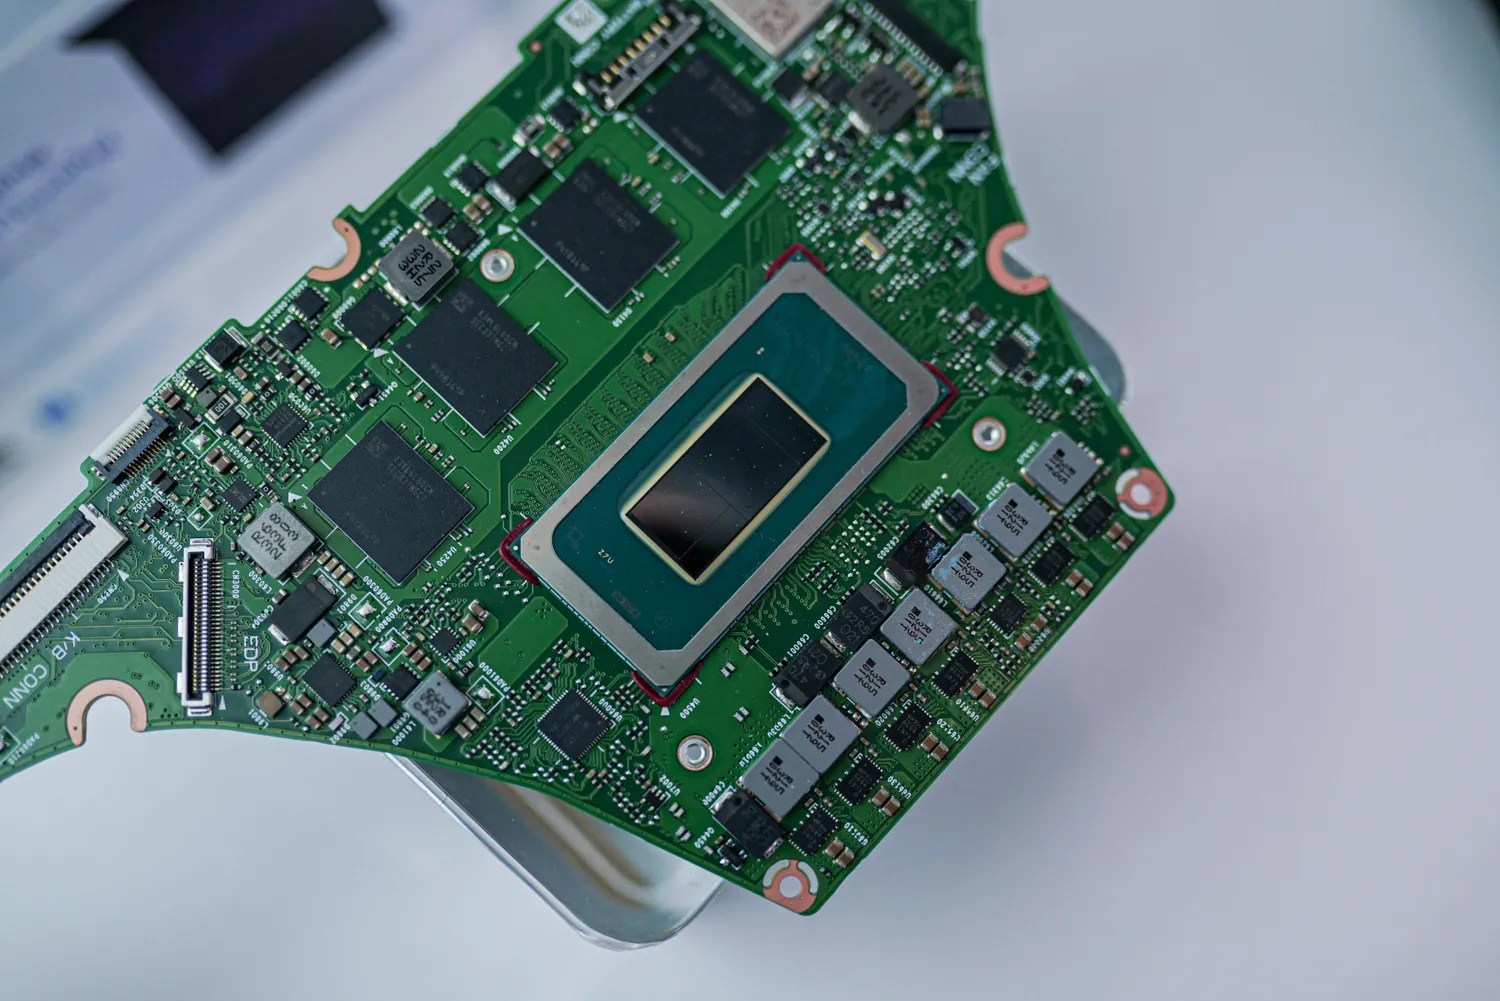 Процессор Intel Meteor Lake установленный на материнской плате.